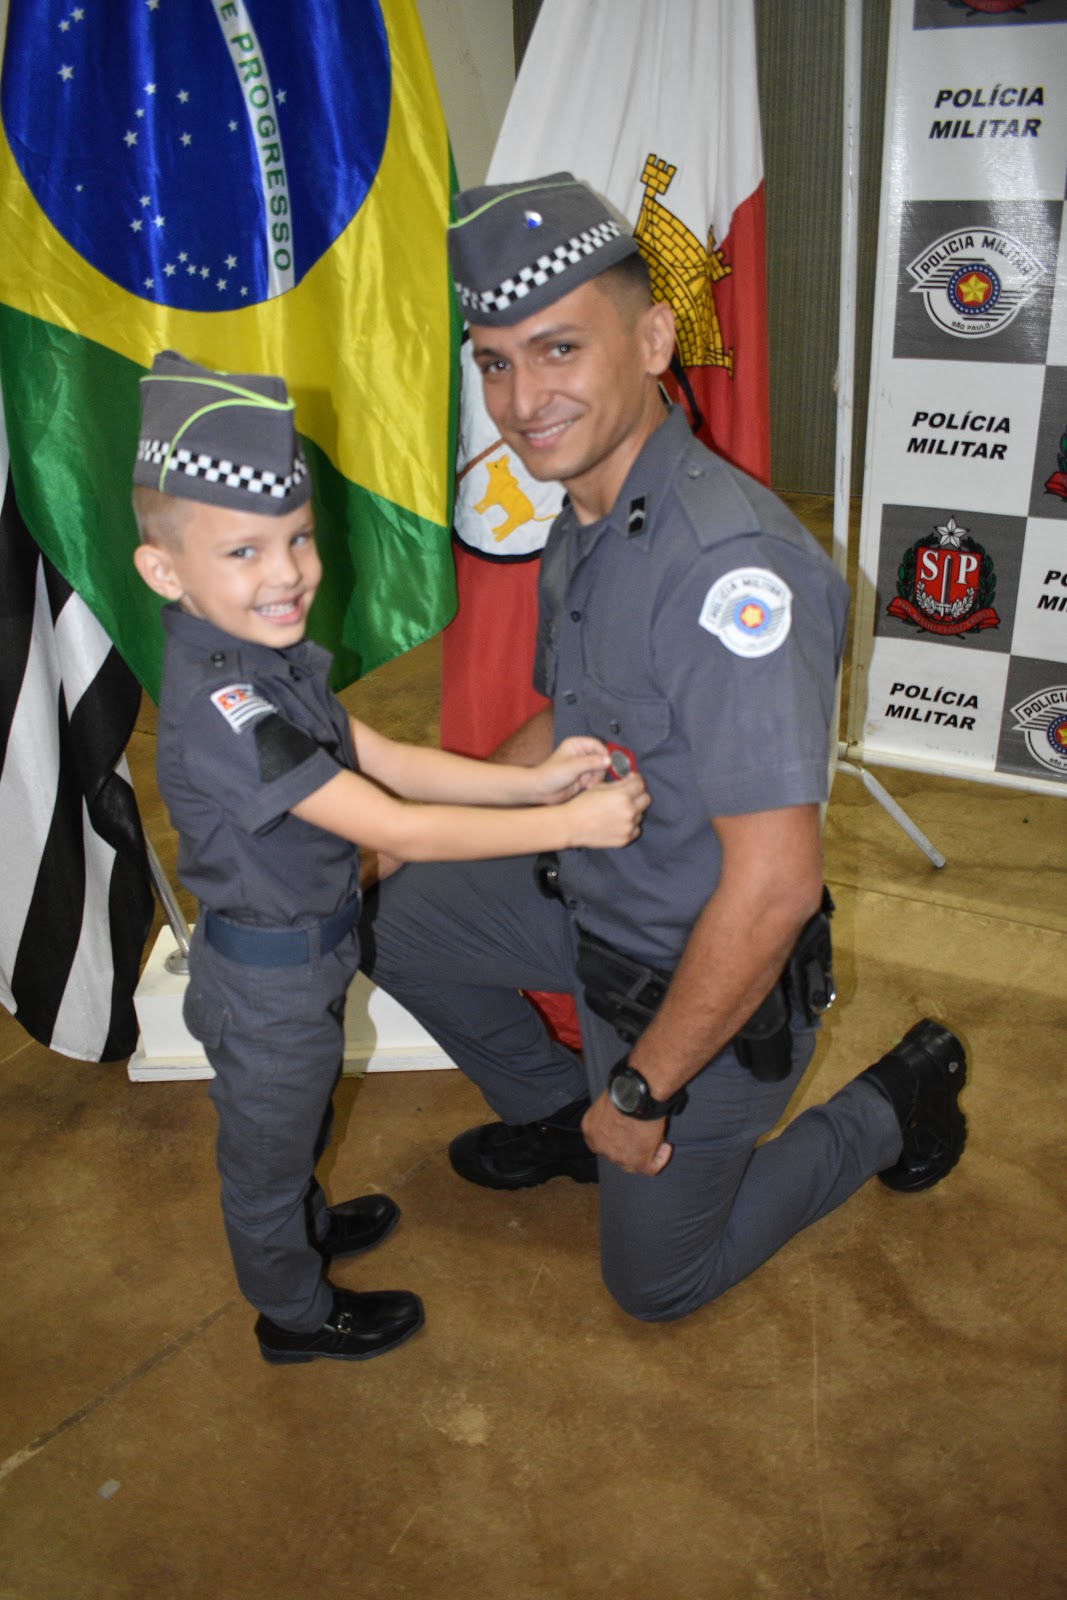 42º BATALHÃO DE POLÍCIA MILITAR DO INTERIOR - PMESP: Bom dia!!